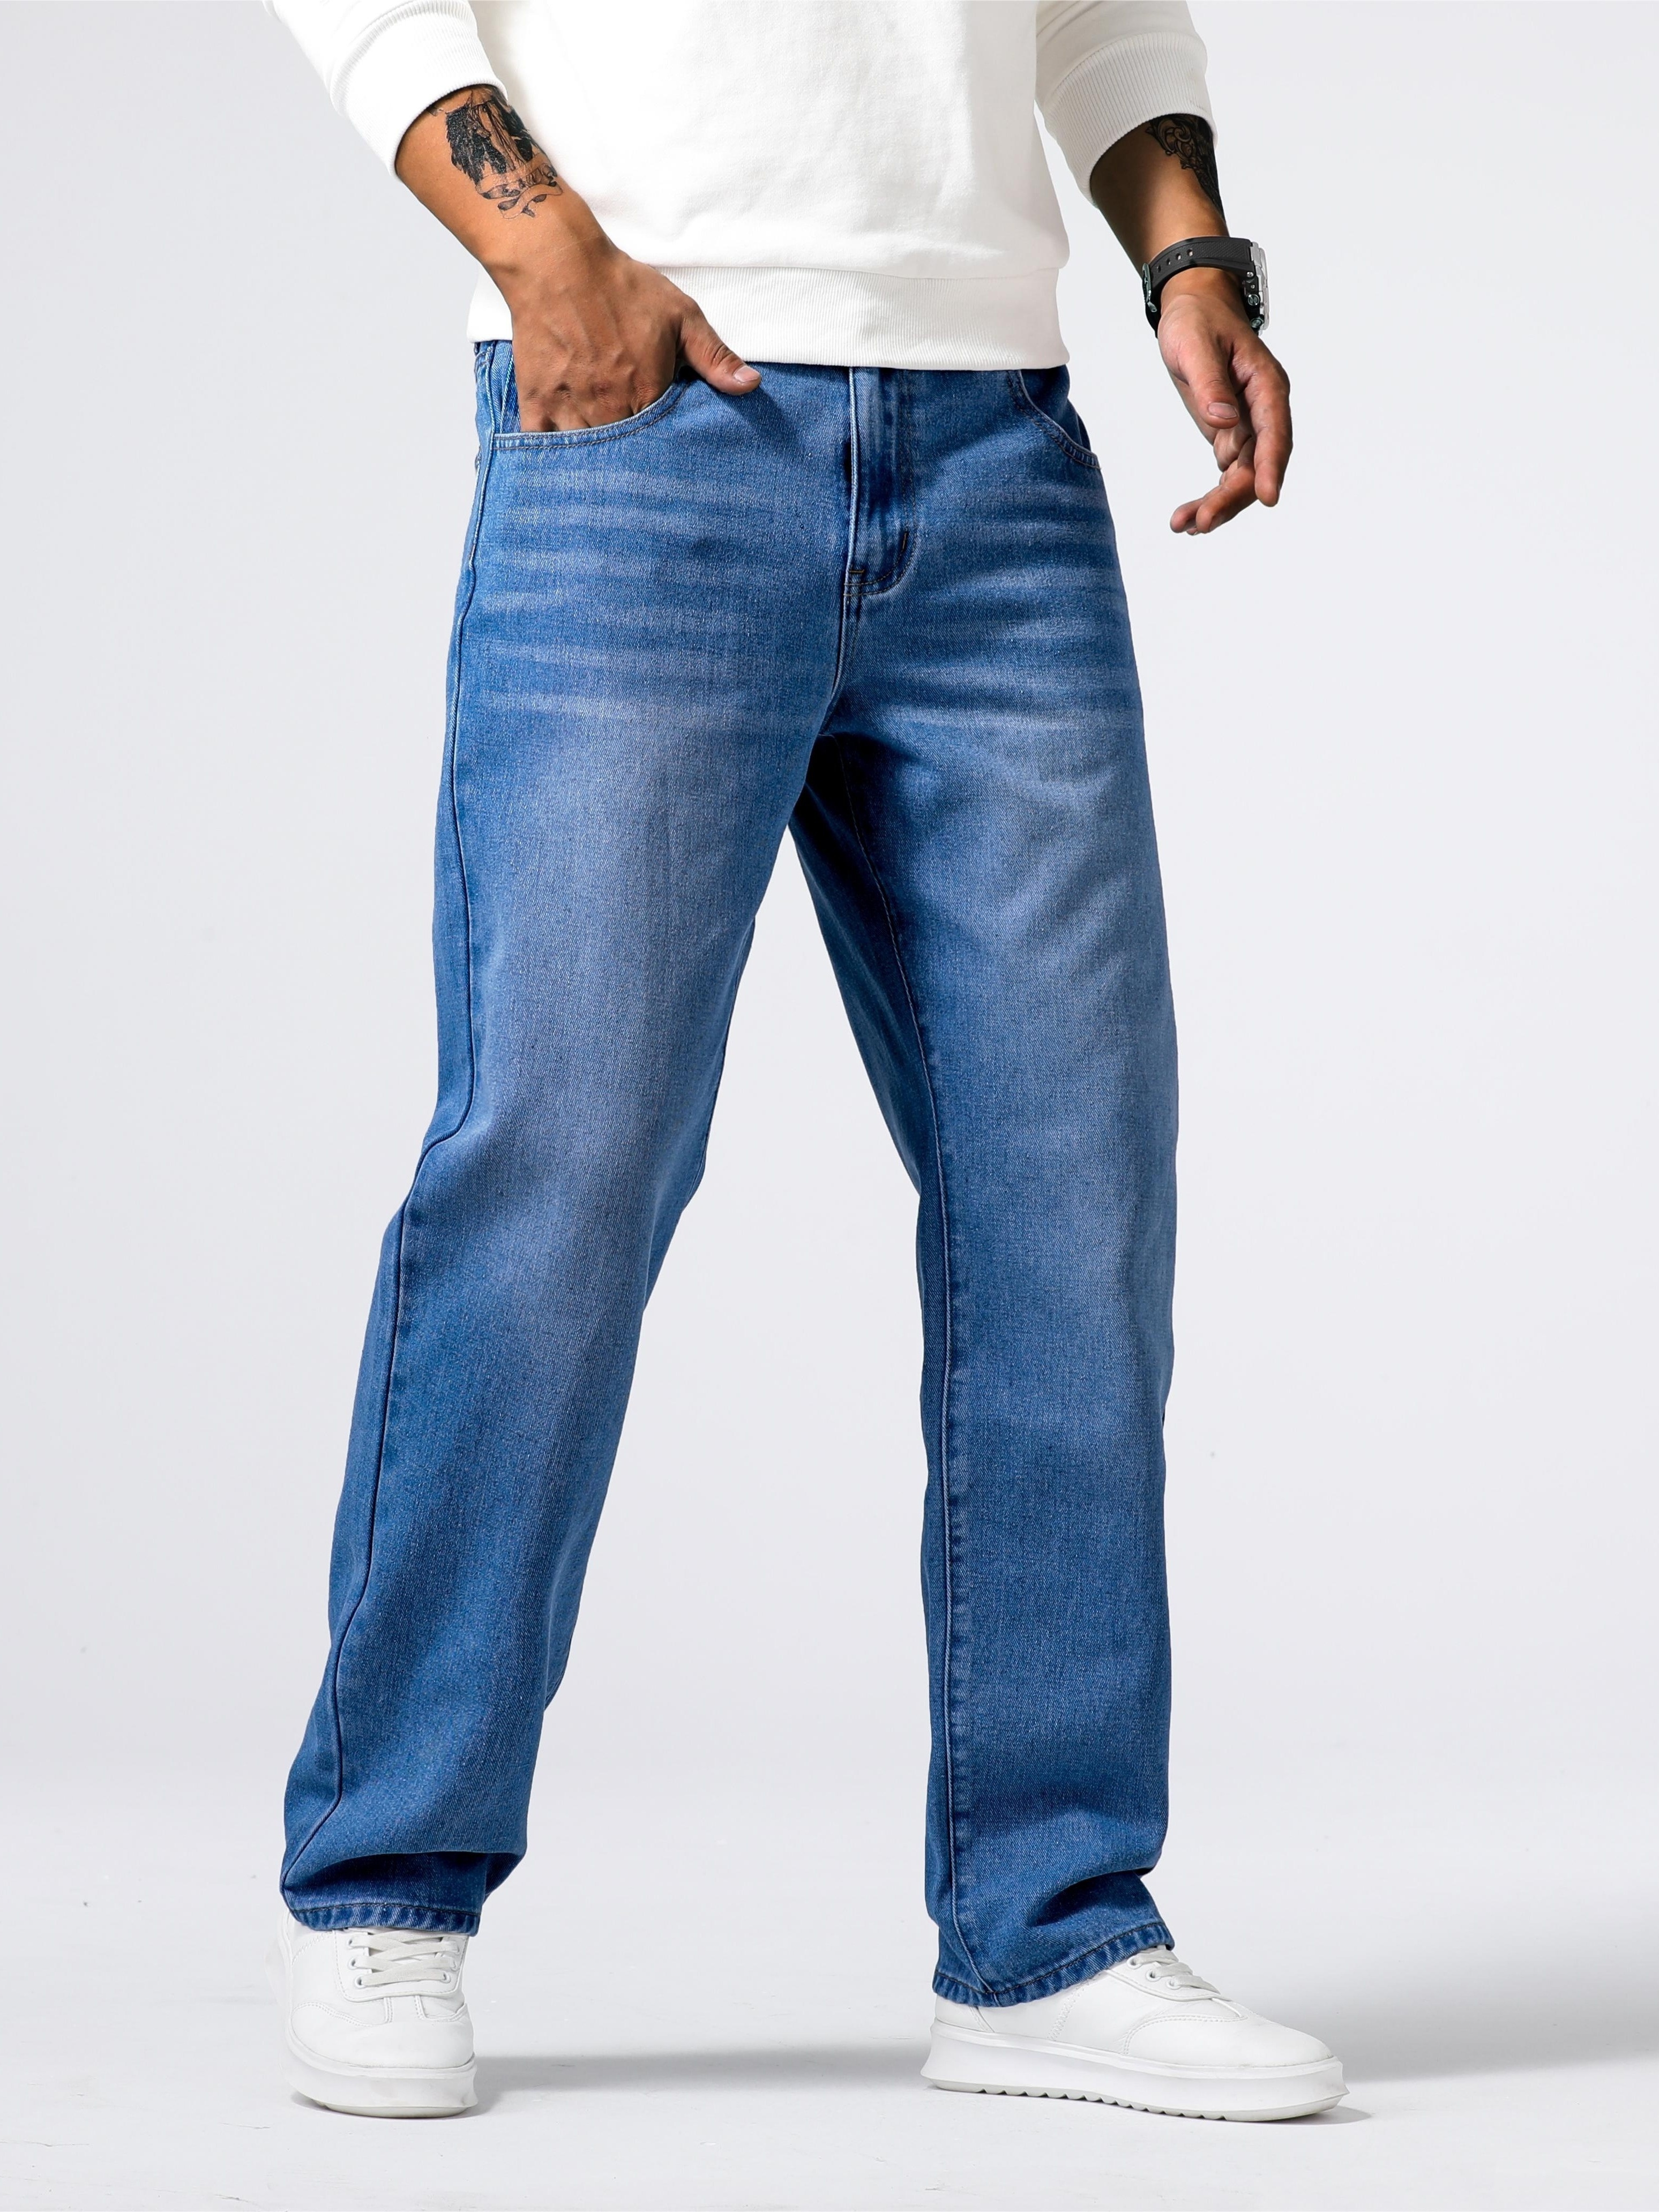 Pantalones VaQueros Para Hombre JEans De Color Kaki Y Azul Moda Casual  Masculino